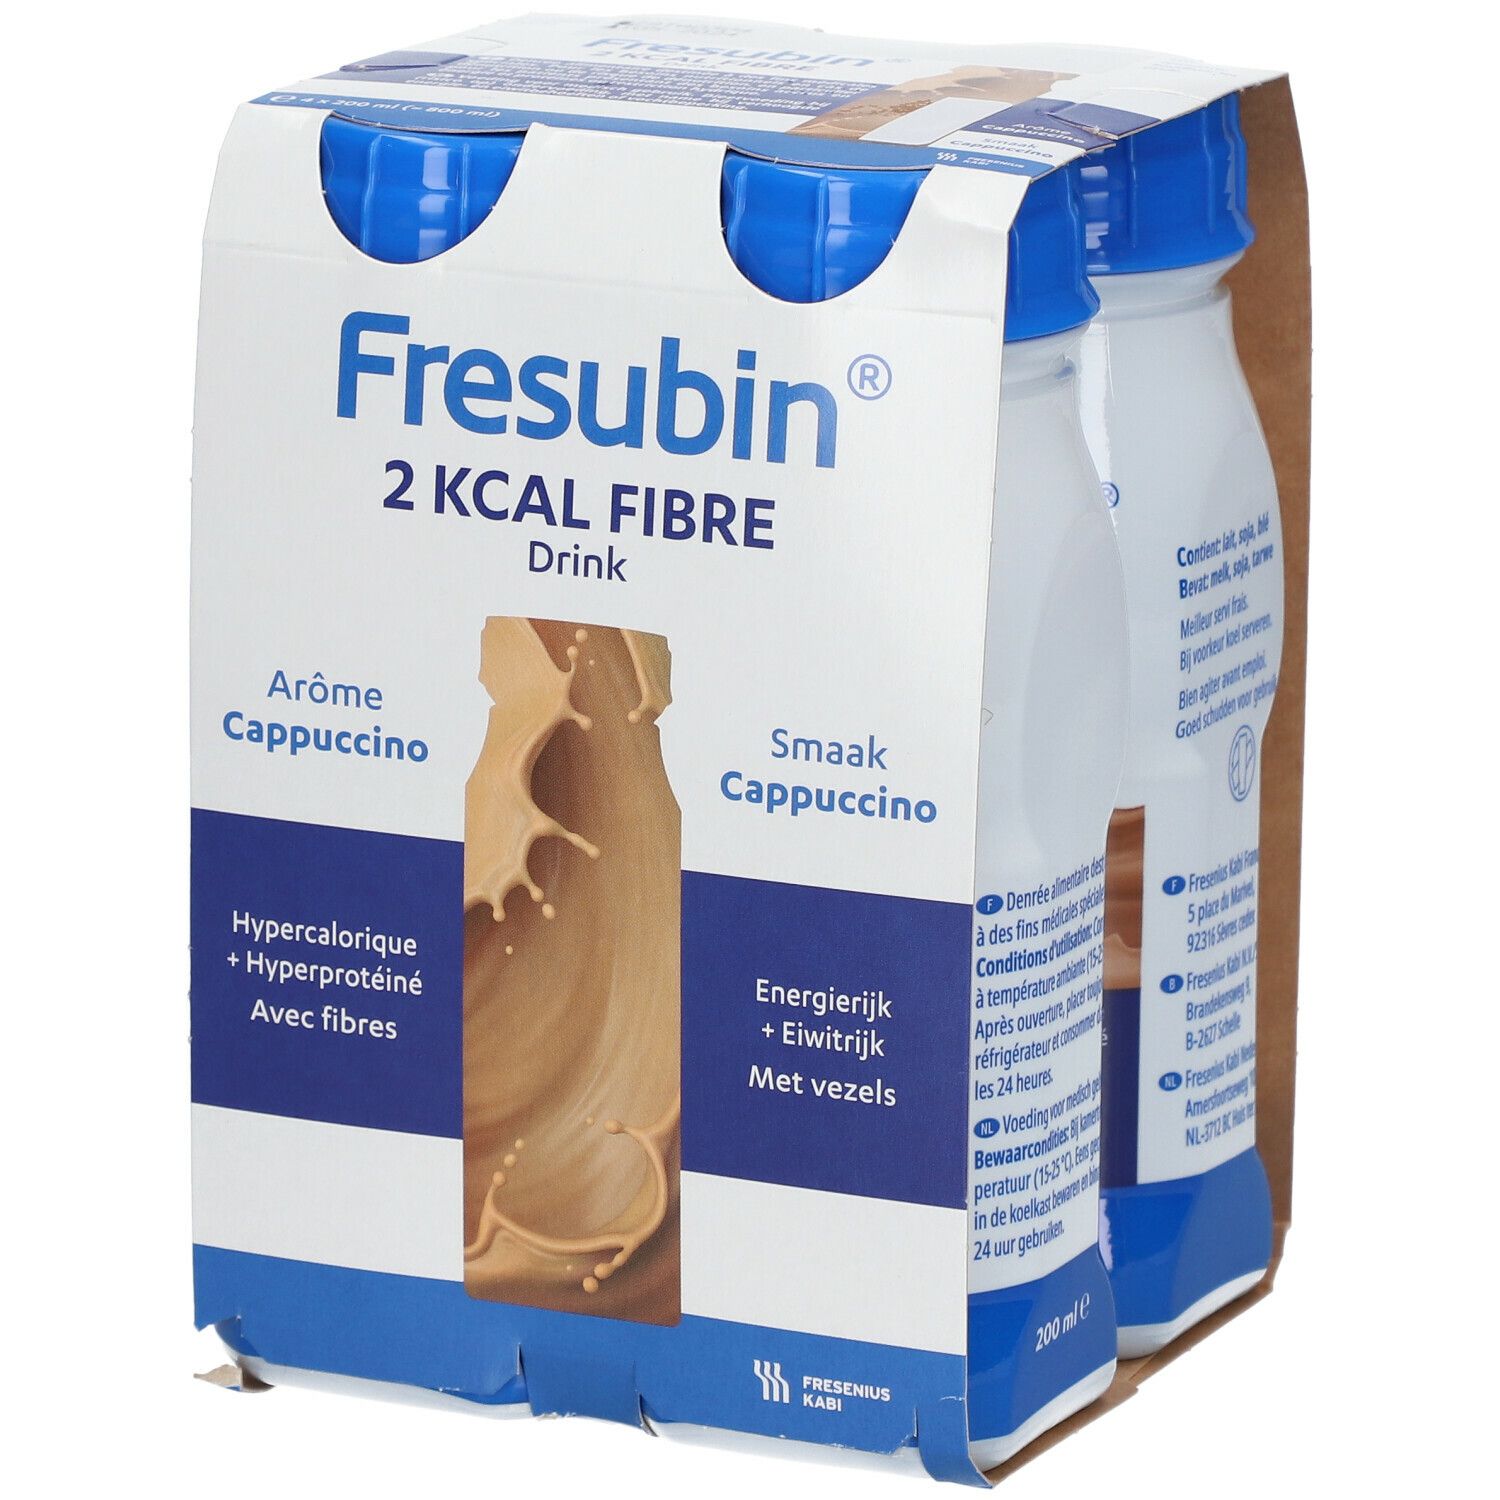 Fresubin® 2 Kcal Fibre Drink saveur cappuccino